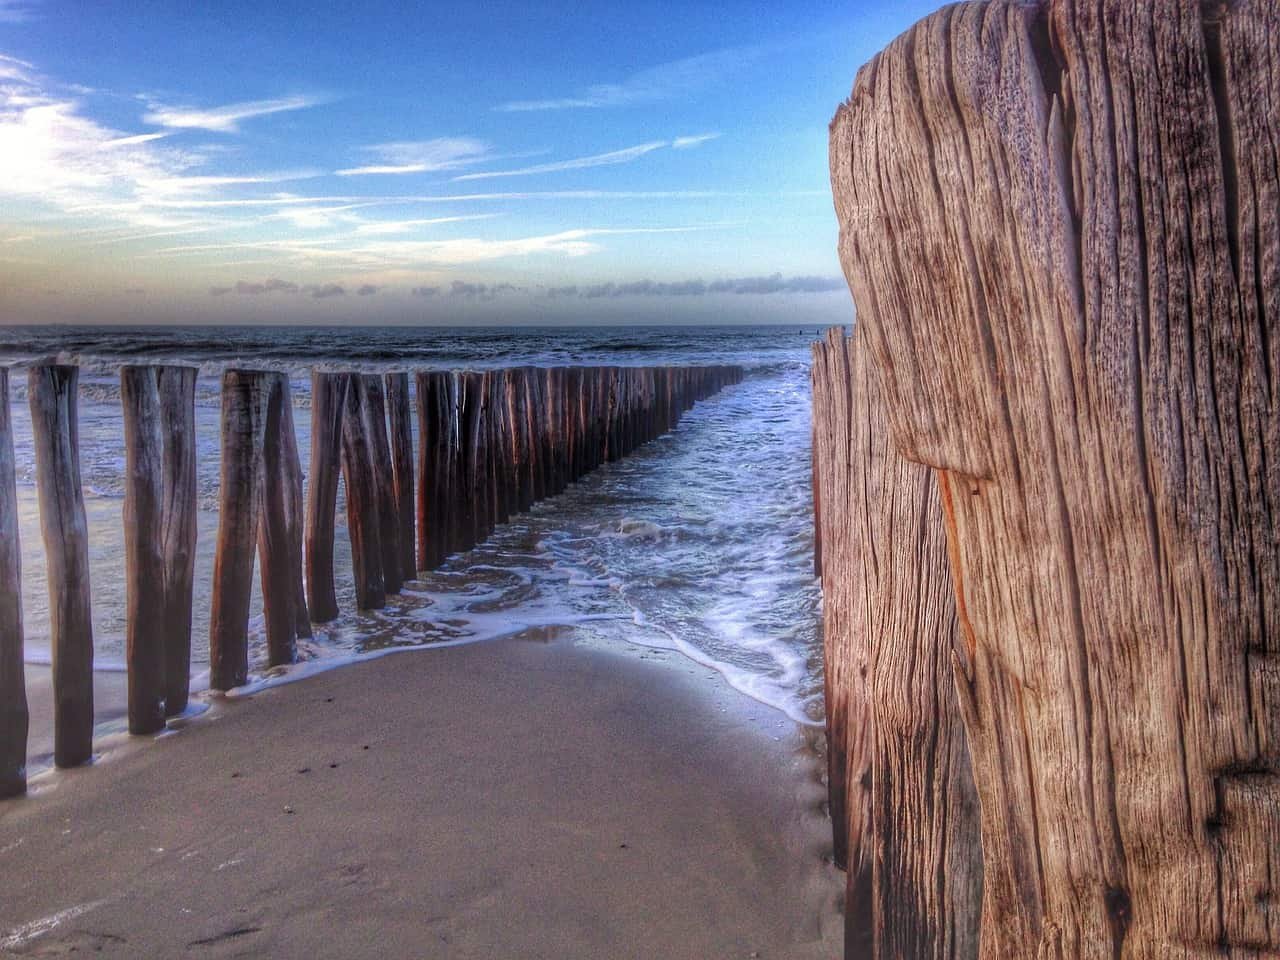 Zeewater spoelt aan op het strand tussen een reeks houten palen.